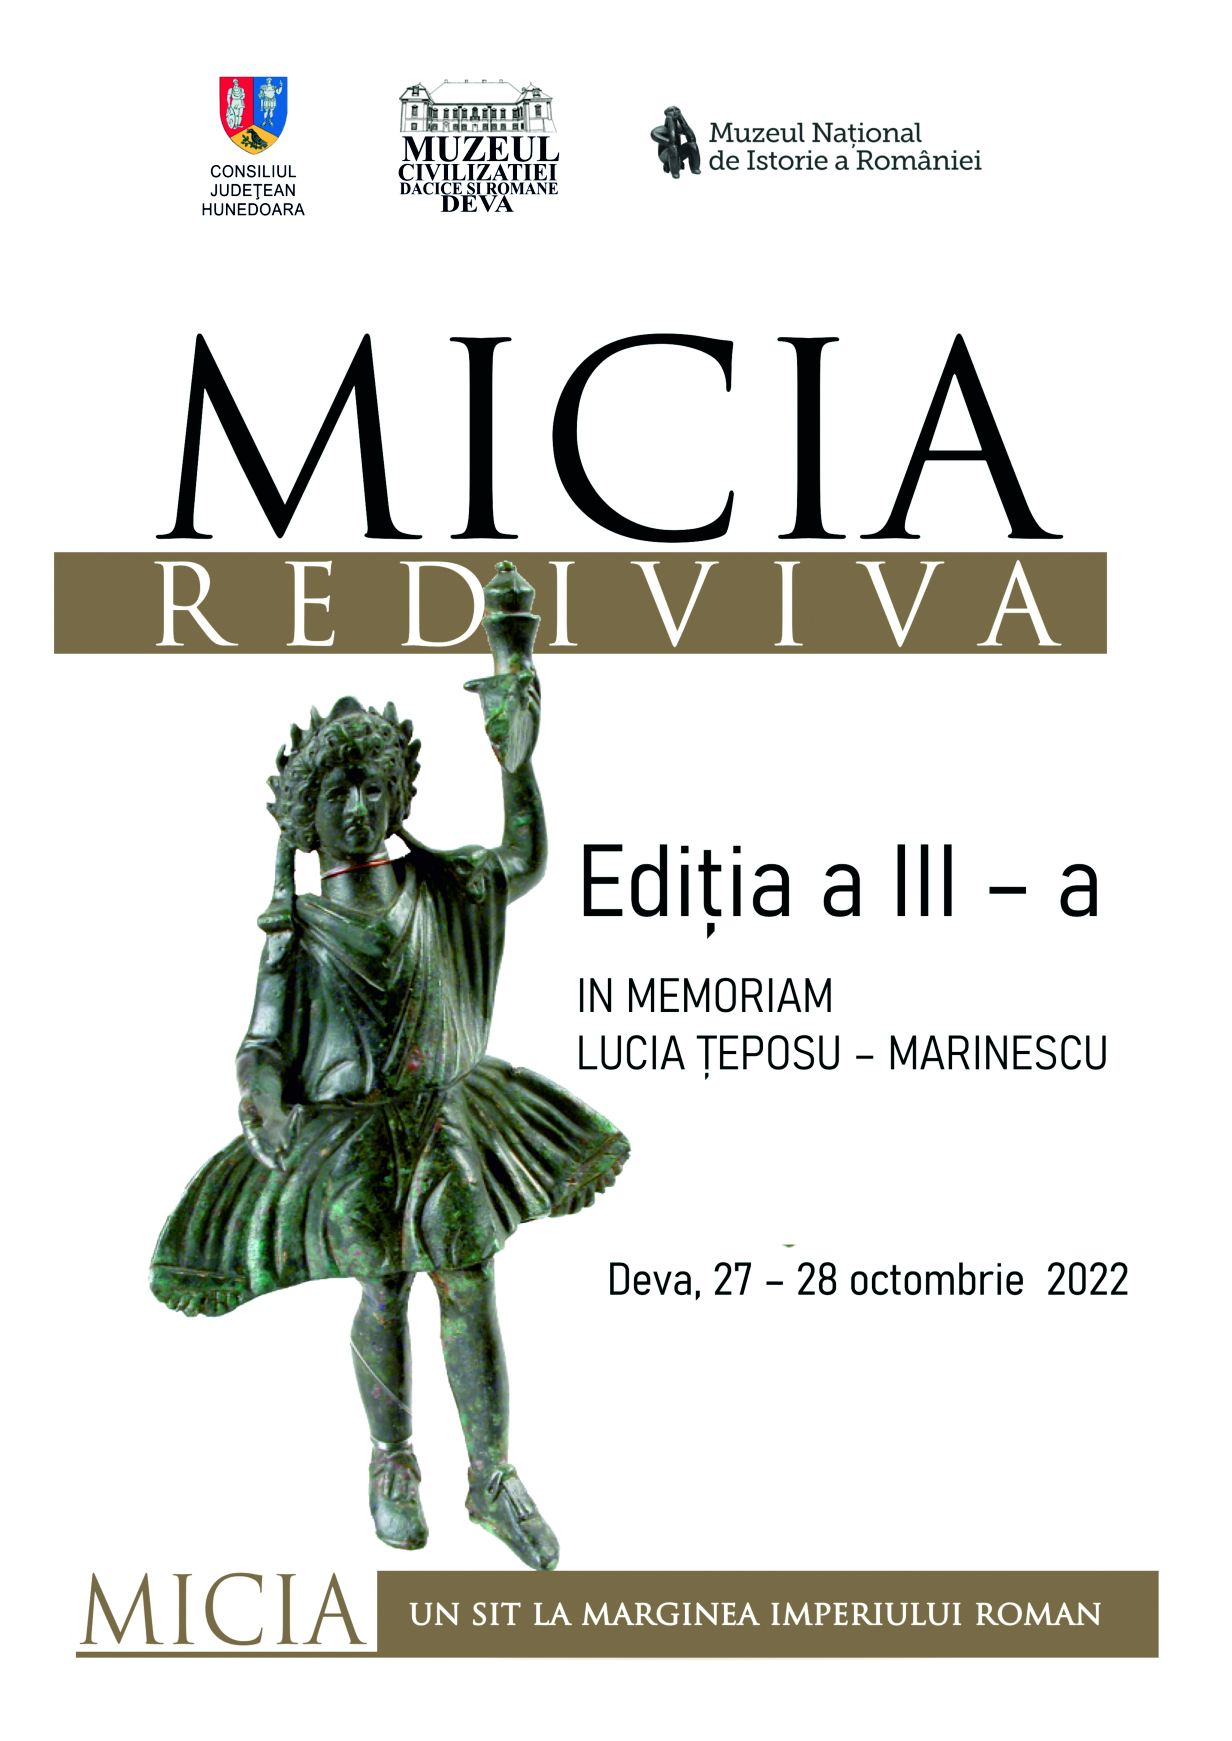 Conferința națională MICIA REDIVIVA, la cea de a III-a ediție – In memoriam Lucia Țeposu-Marinescu